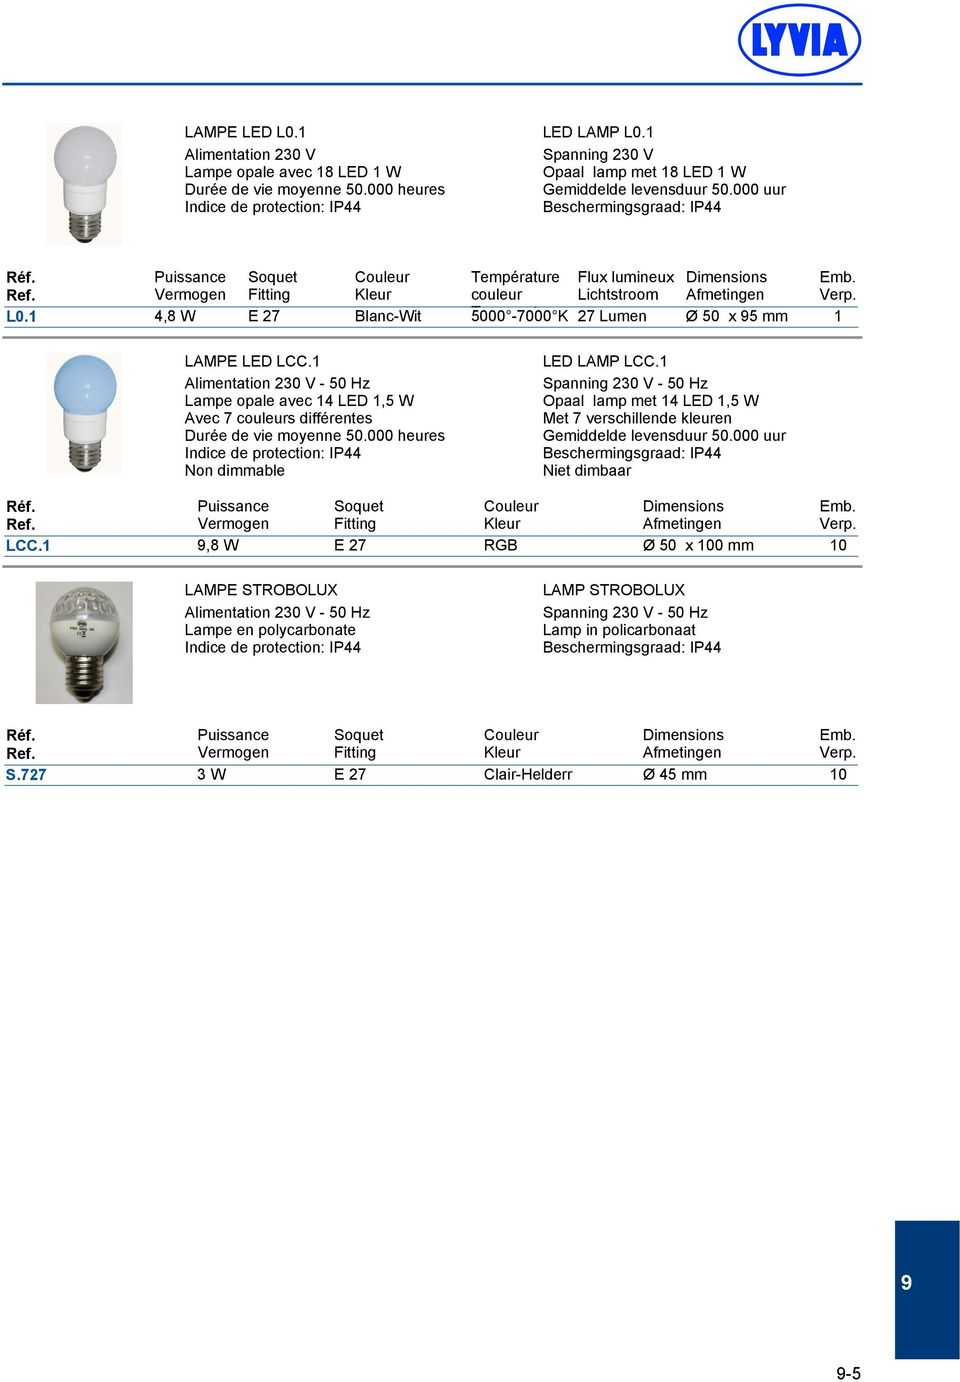 Alimentation 230 V - 50 Hz Lampe opale avec 4 LED,5 W Avec 7 couleurs différentes Durée de vie moyenne 50.000 heures Indice de protection: IP44 Non dimmable LED LAMP LCC.